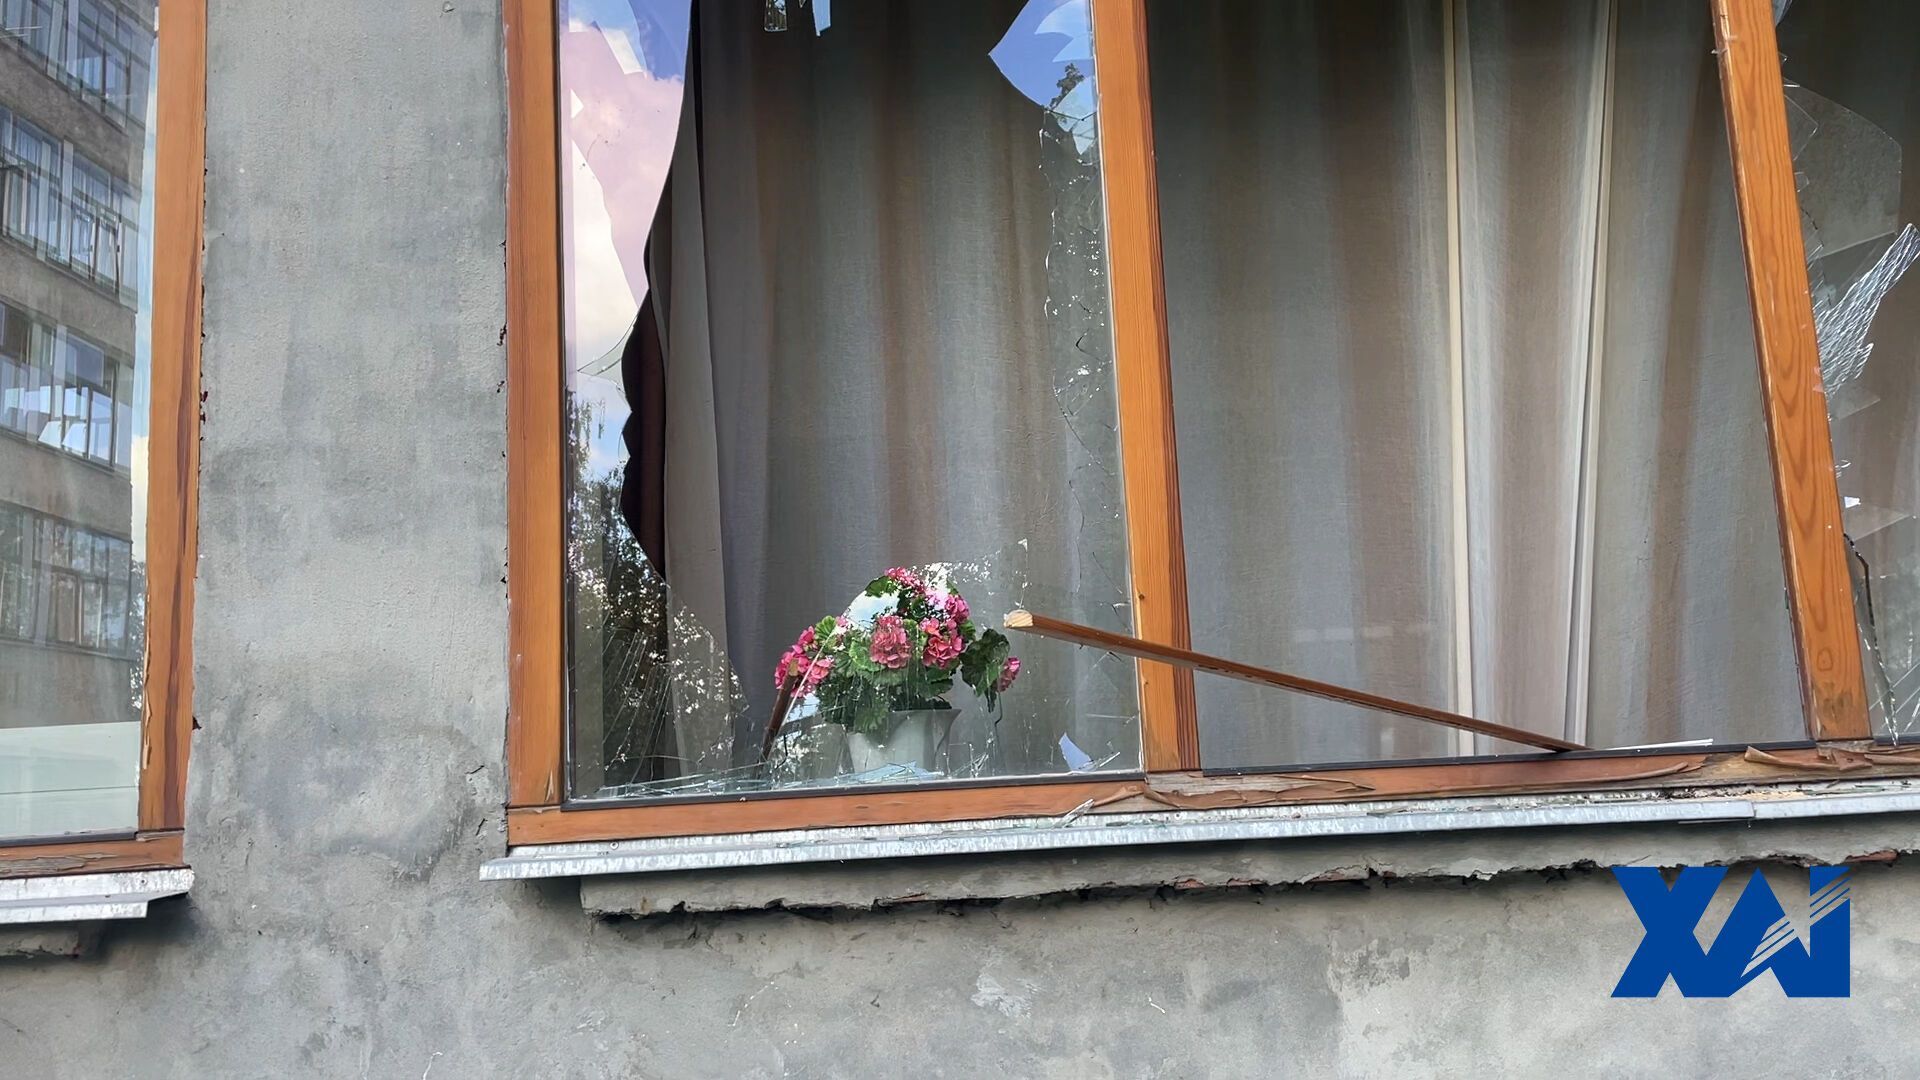 Был страшный свист: в университете Харькова рассказали о российской атаке бомбами ФАБ 500. Фото